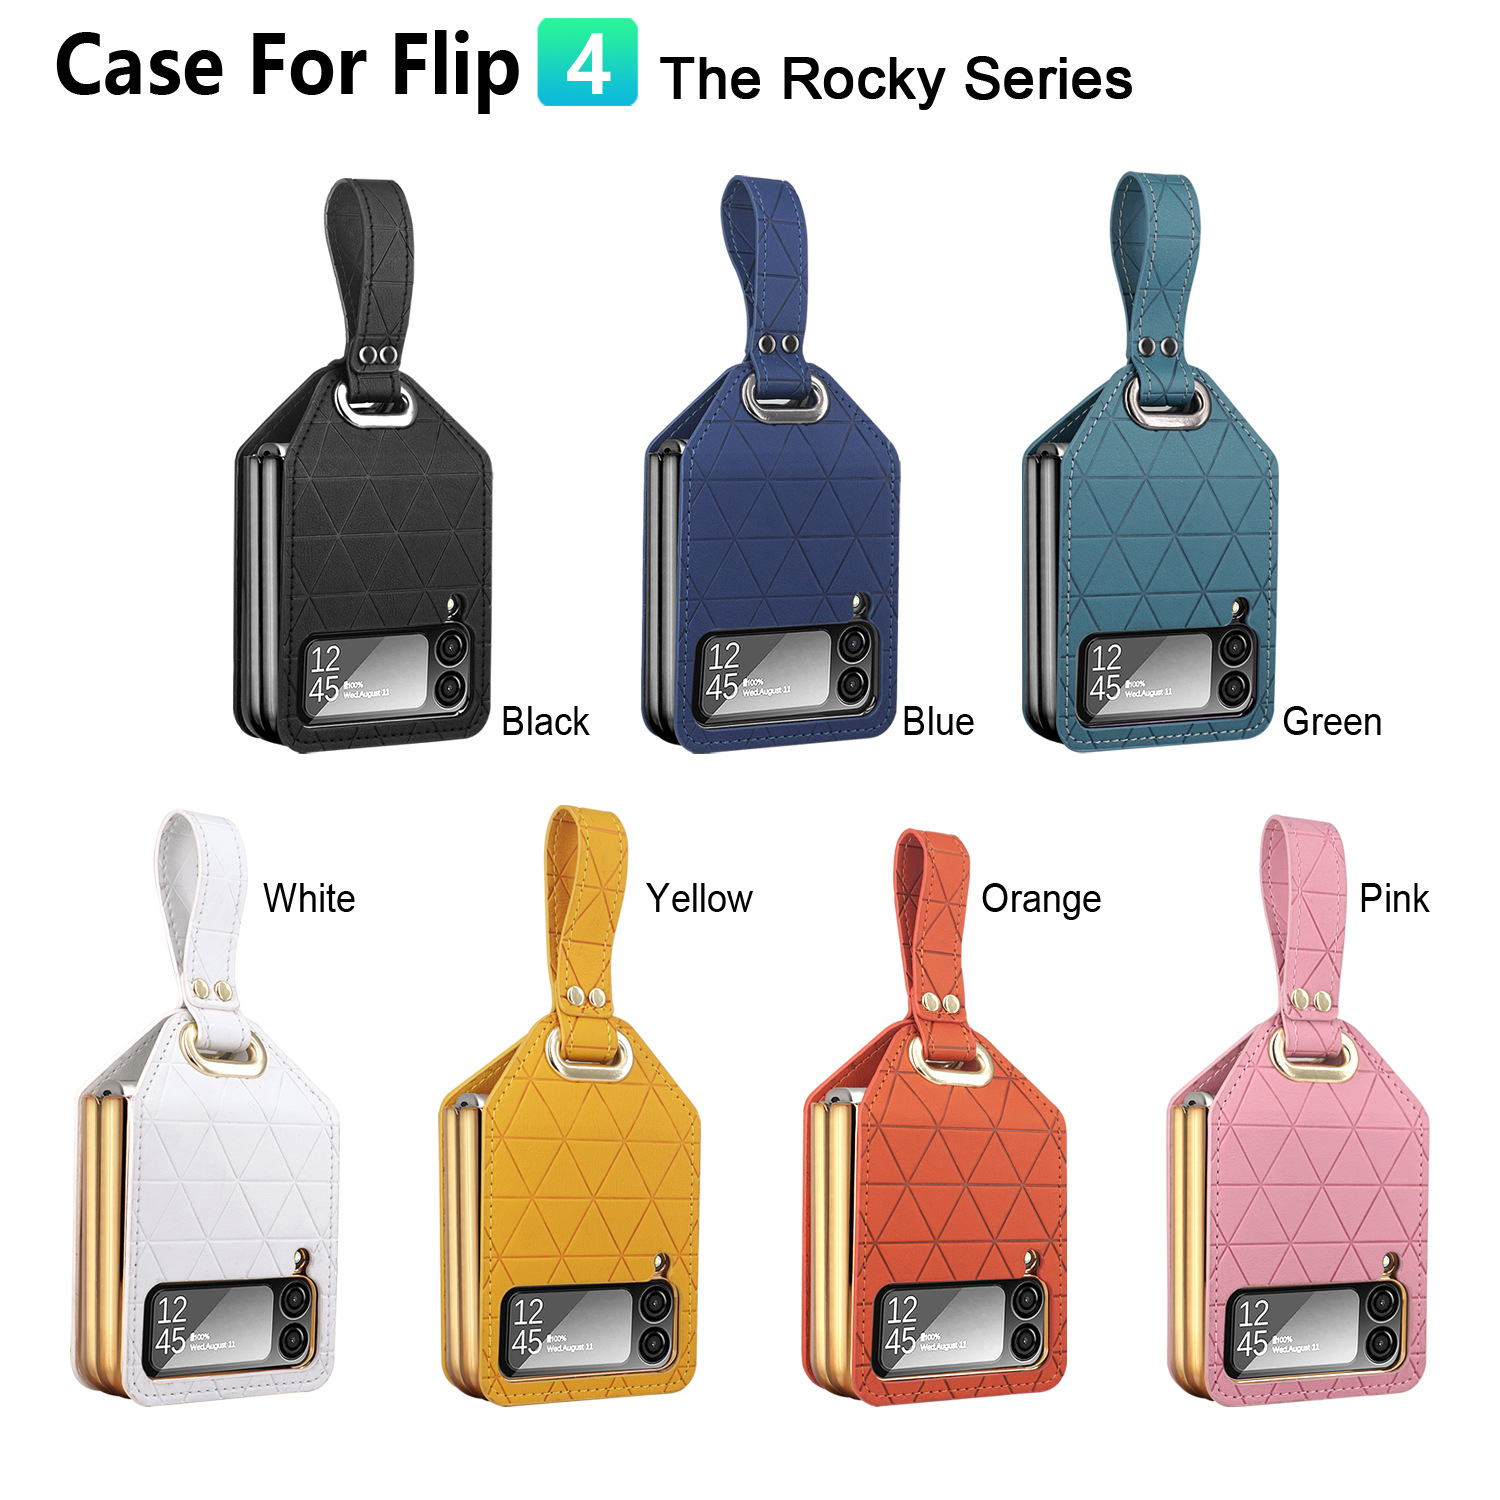 环敏厂家直销新款Flip4卡洛琪系列折叠屏时尚多色防摔保护手机壳